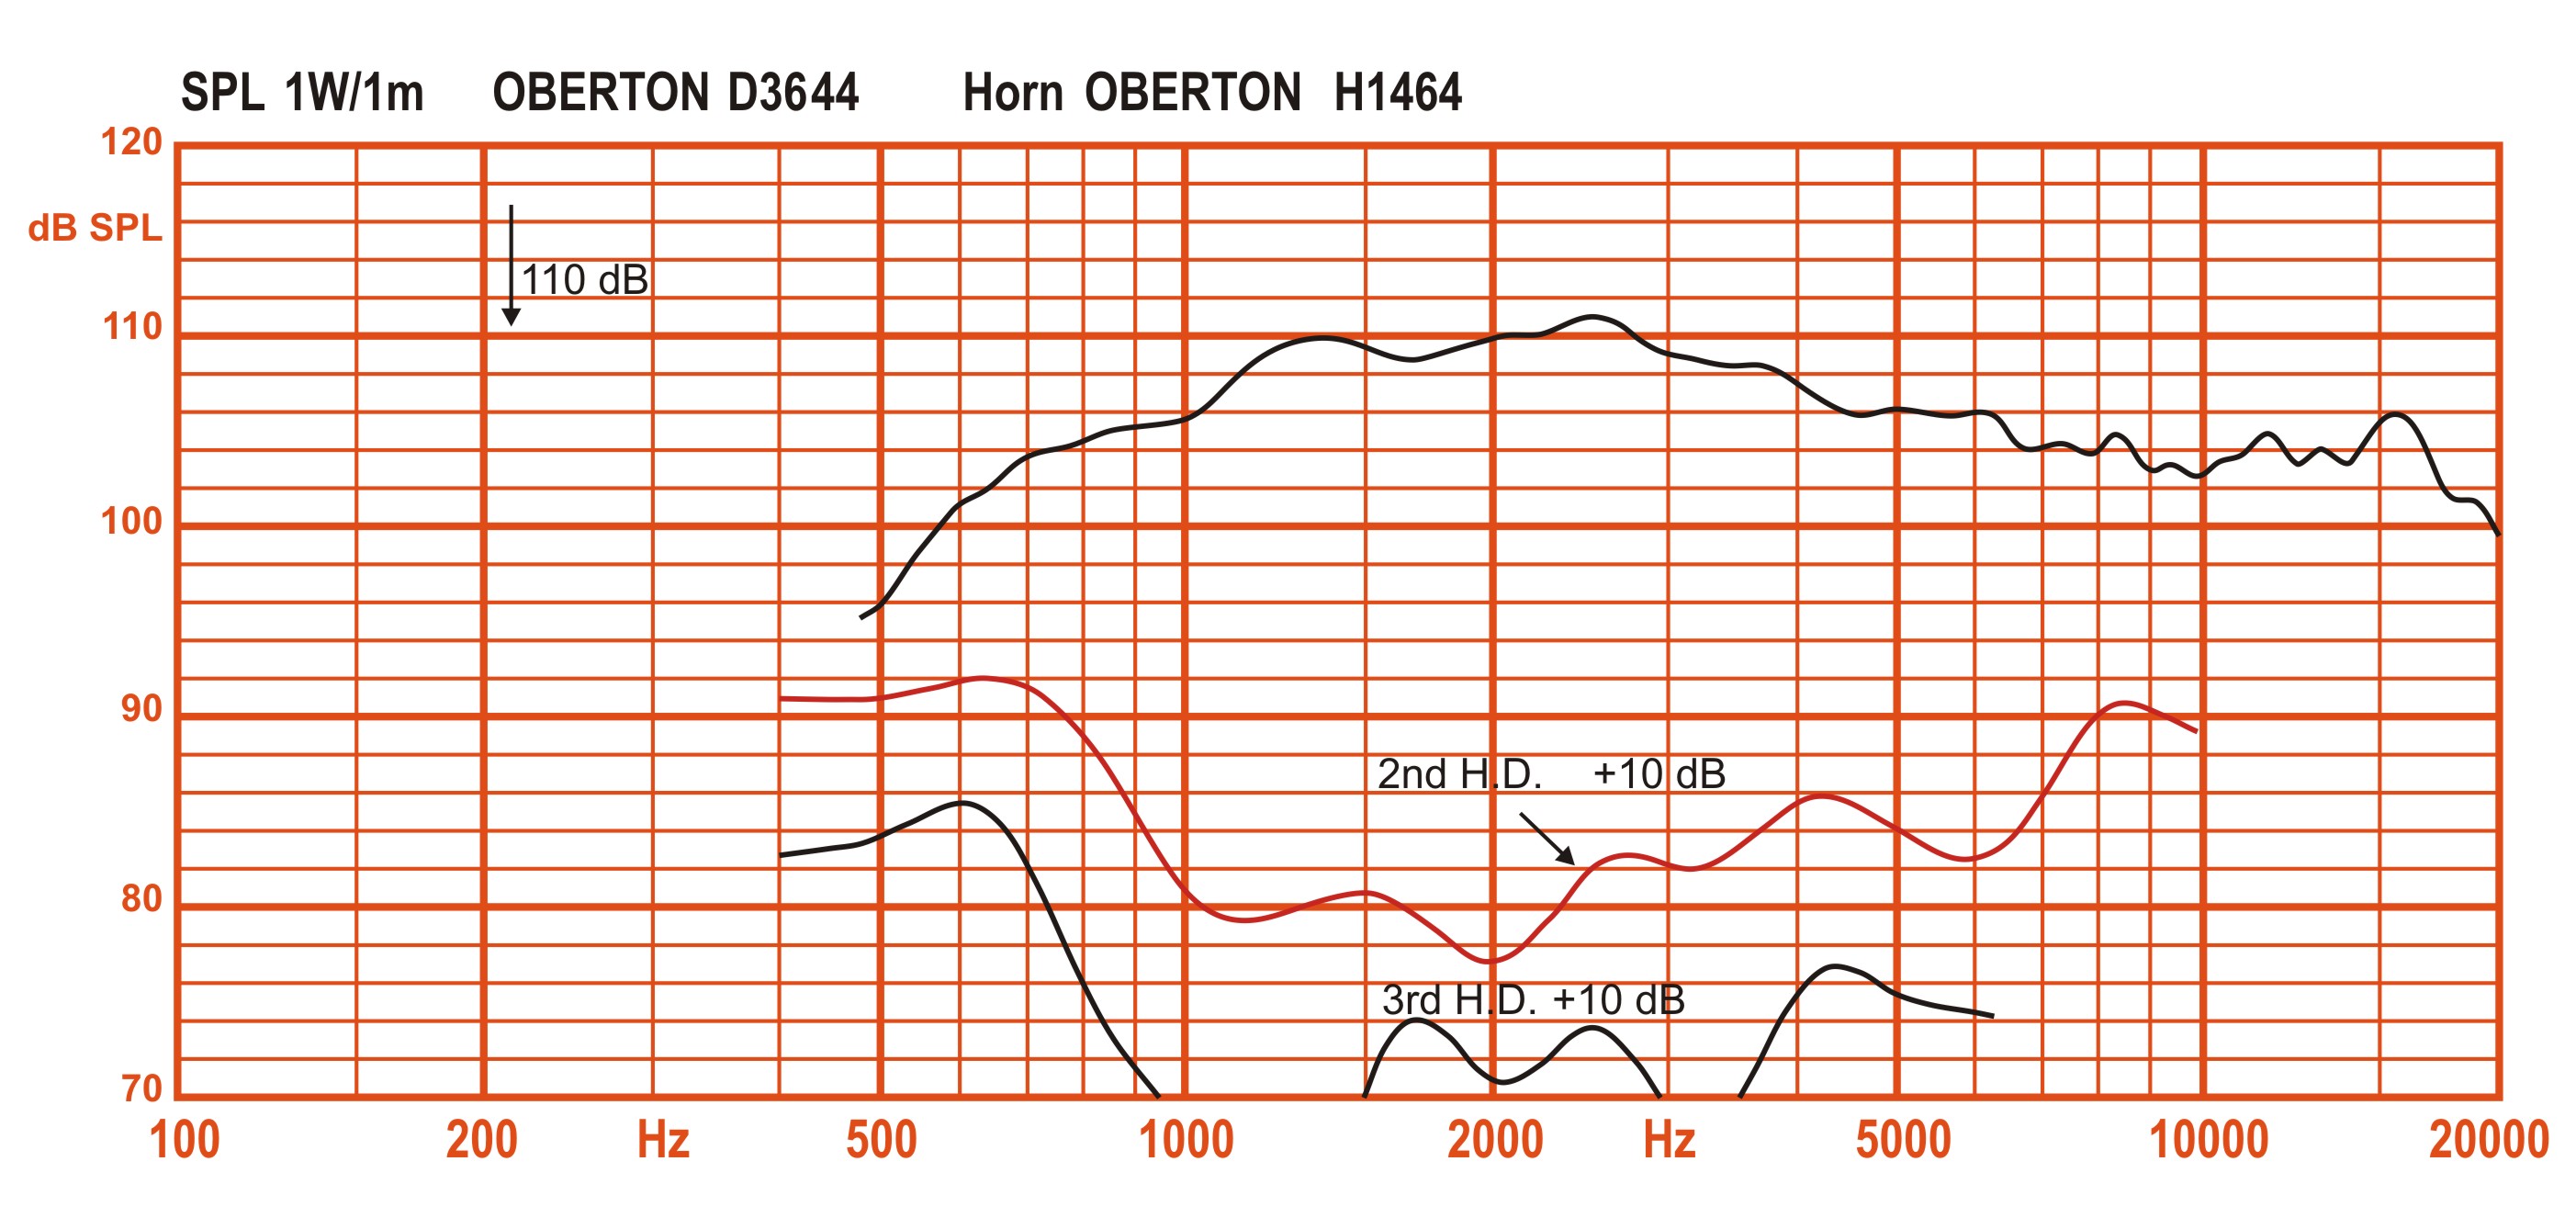 Oberton D3644